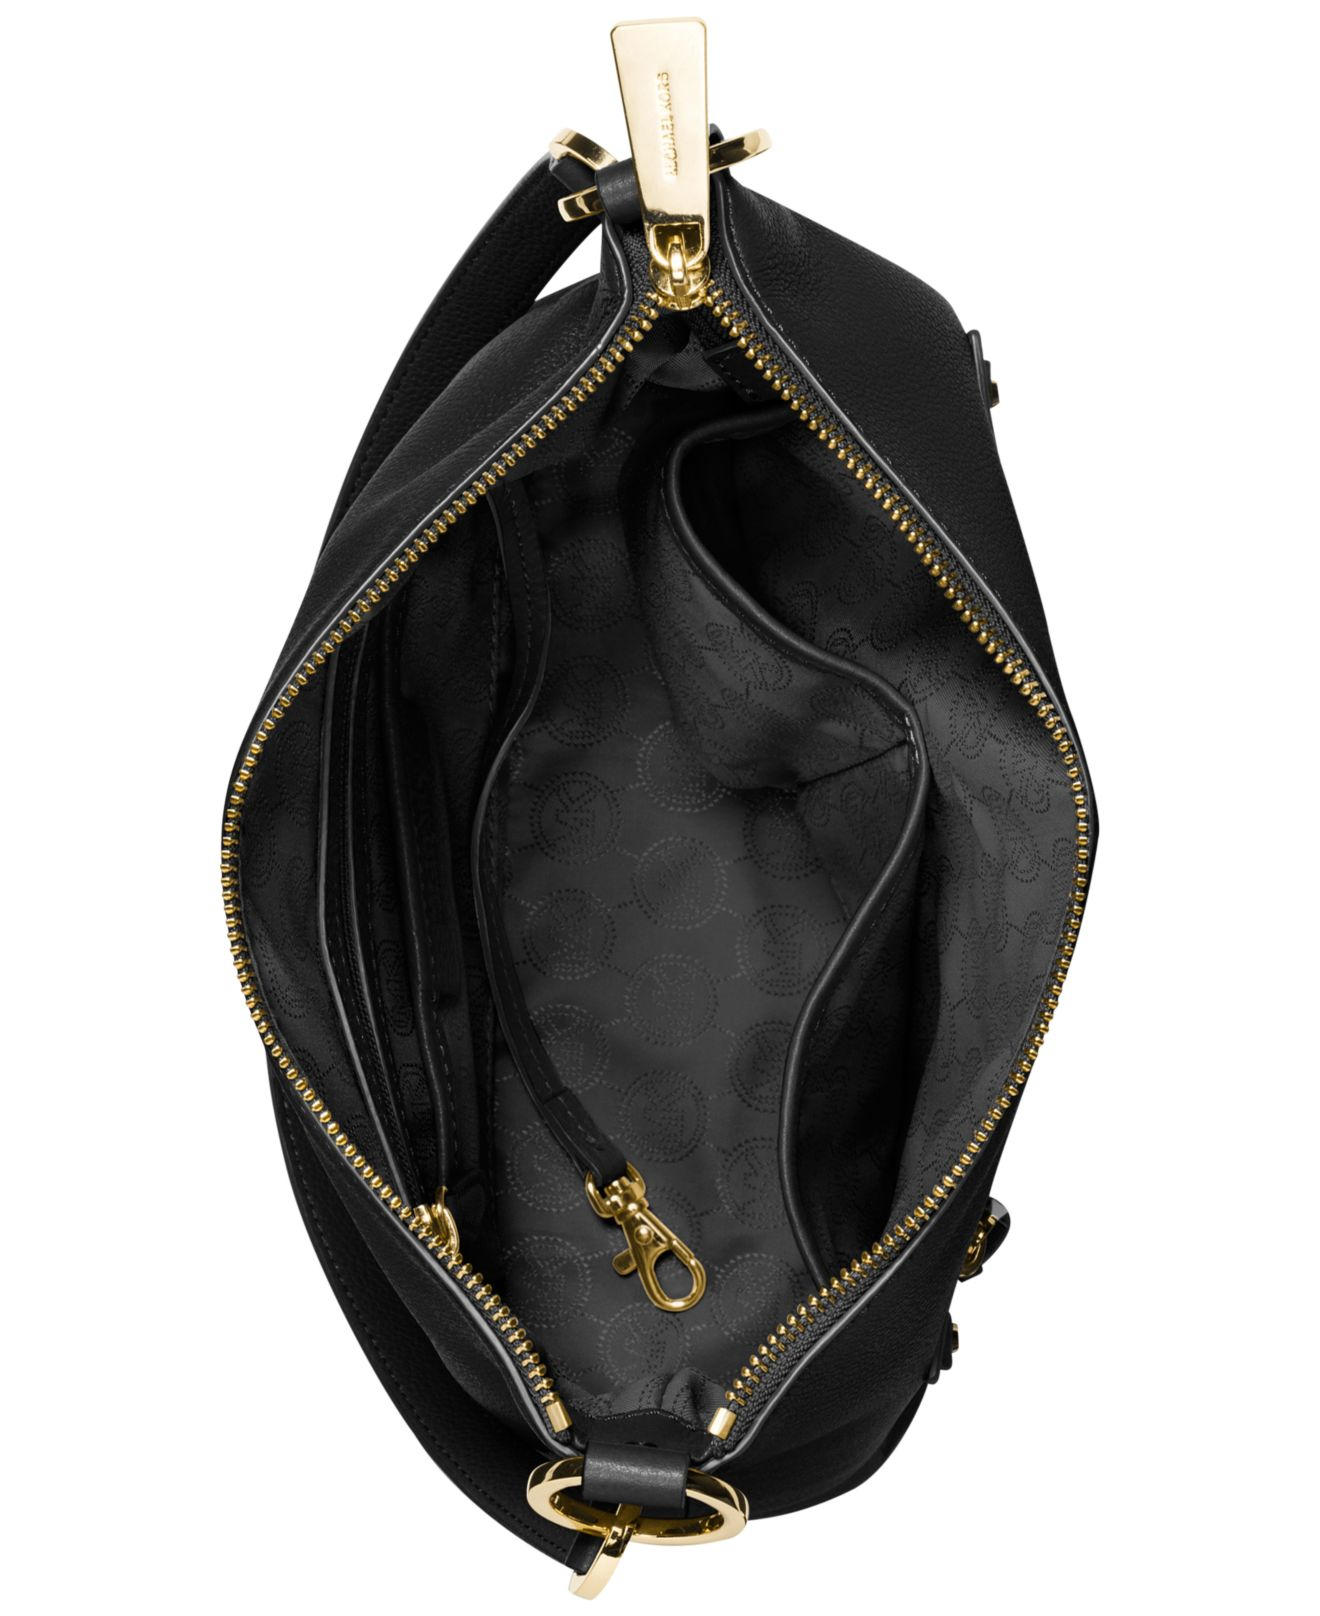 Michael Kors, Shoulder Bag, Bag inspo, Black Bag